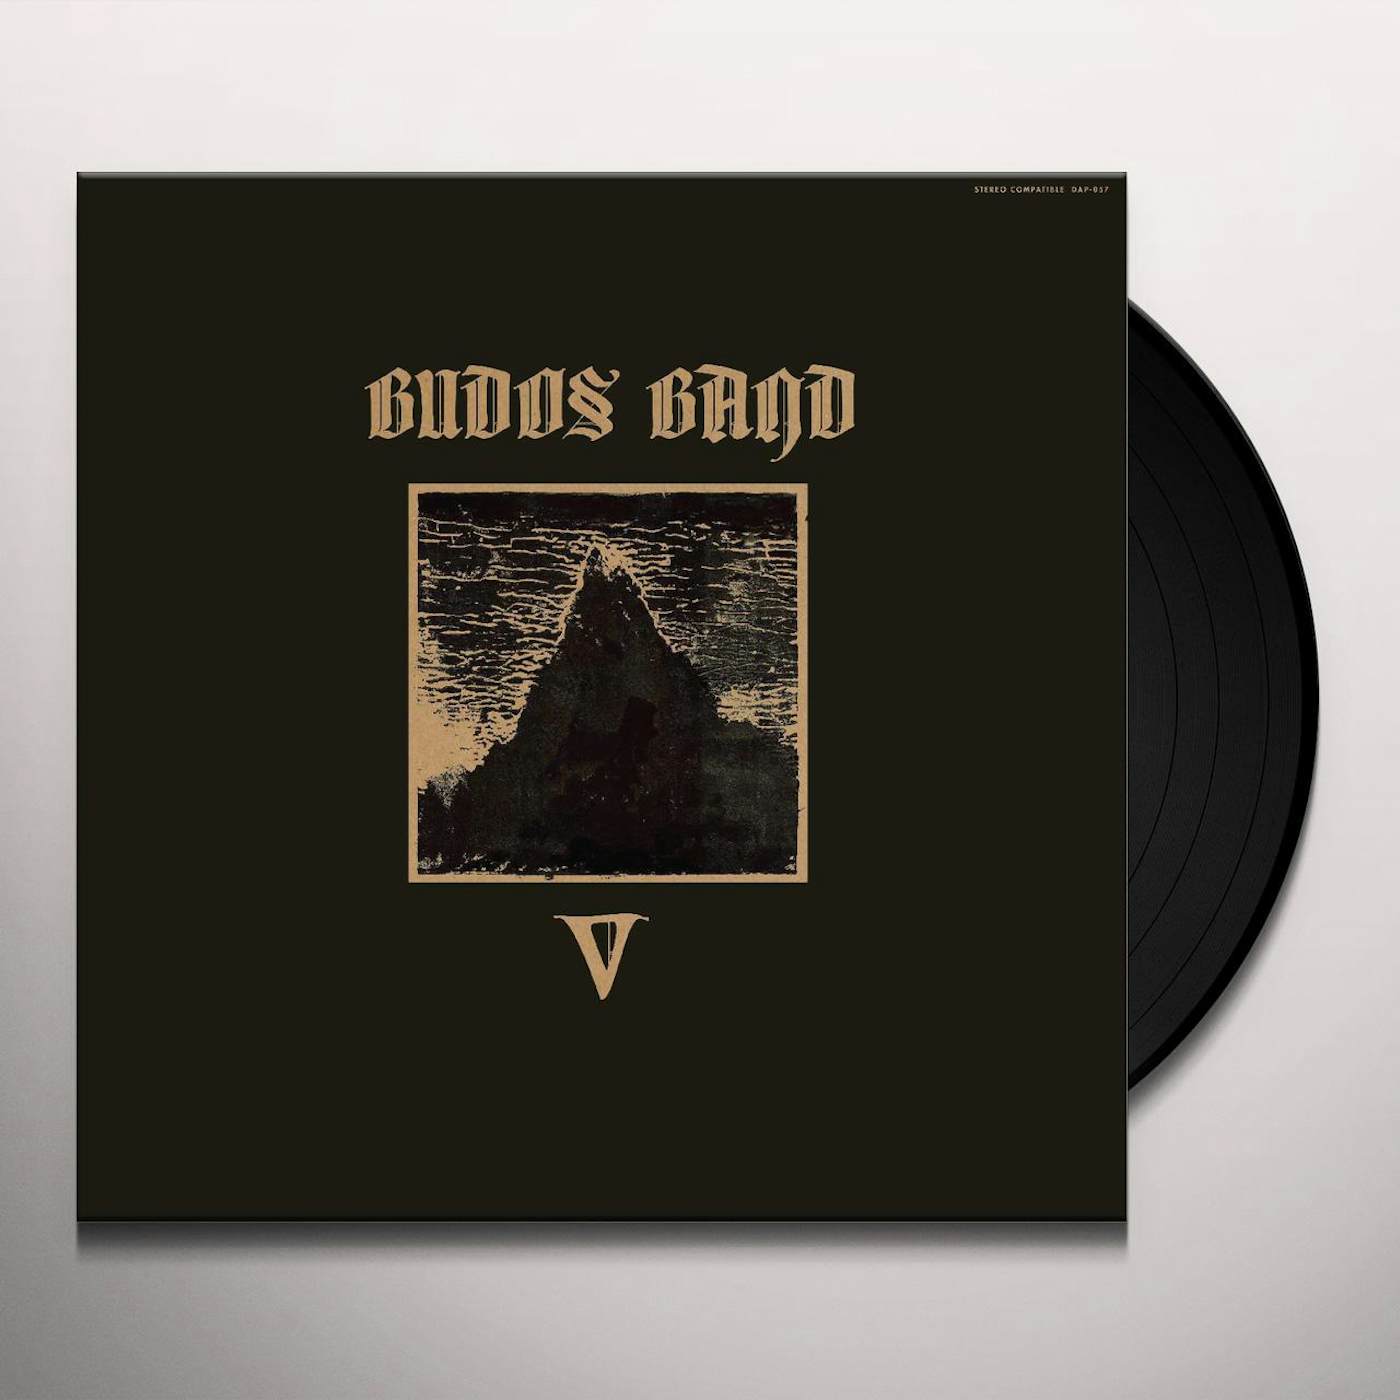 The Budos Band V (DL) Vinyl Record